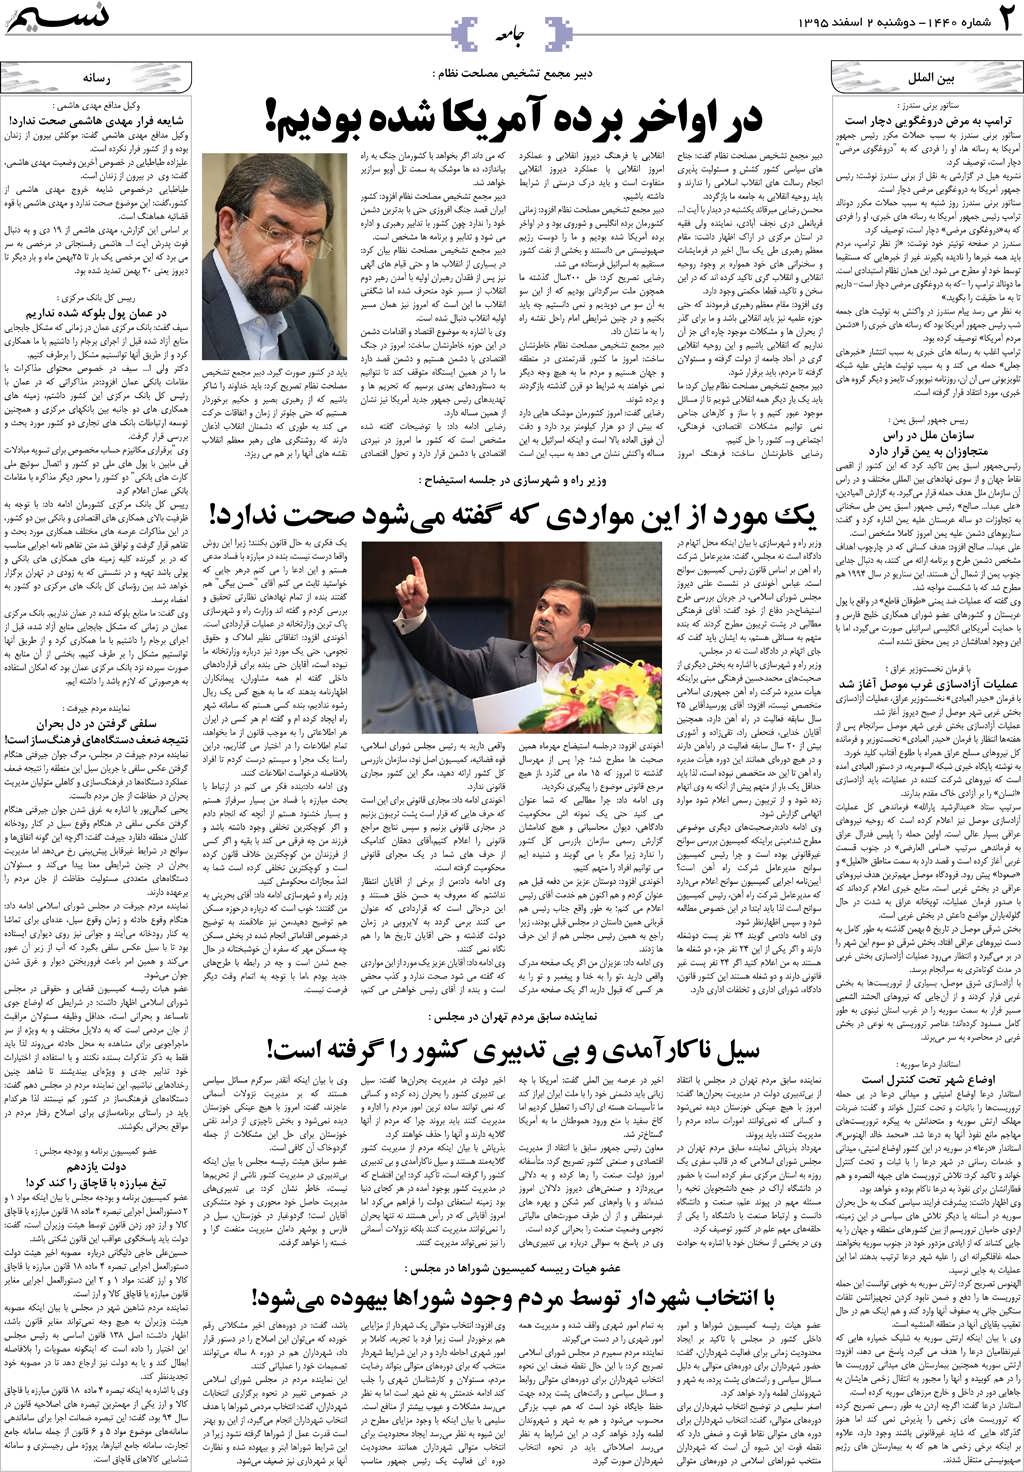 صفحه جامعه روزنامه نسیم شماره 1440